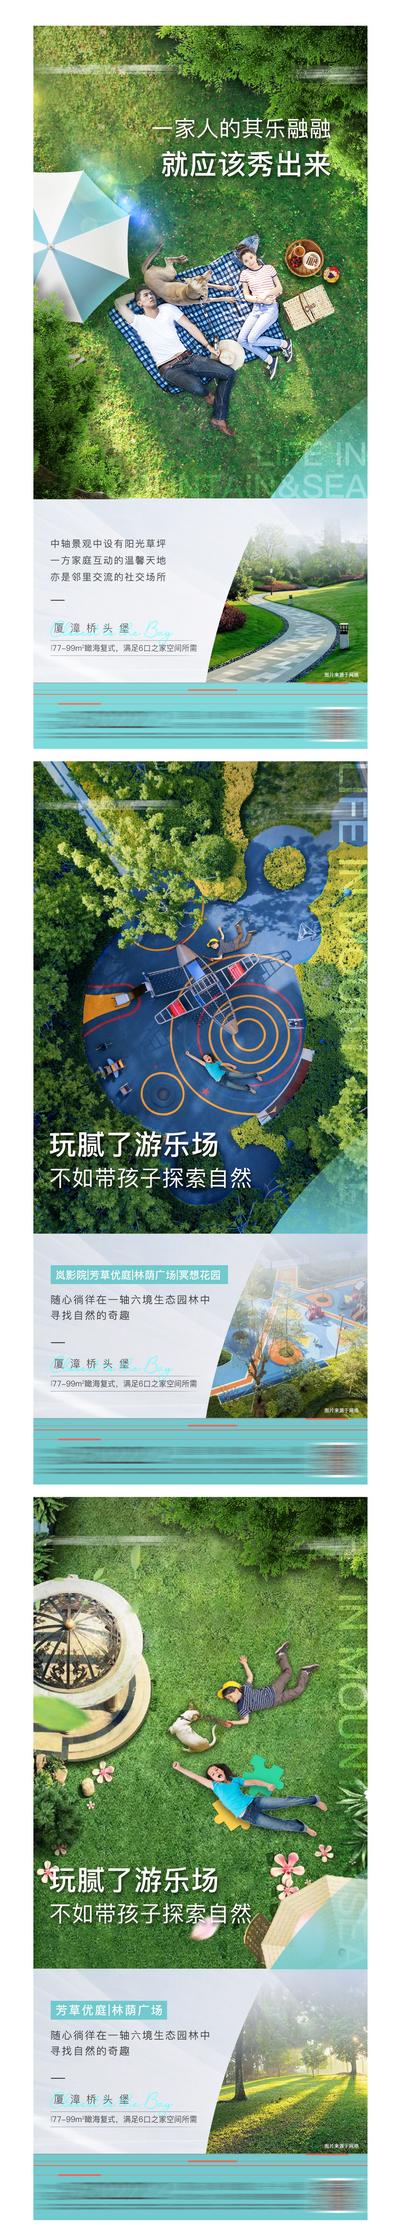 南门网 海报 地产  园林  游乐场  社区  价值点 系列 